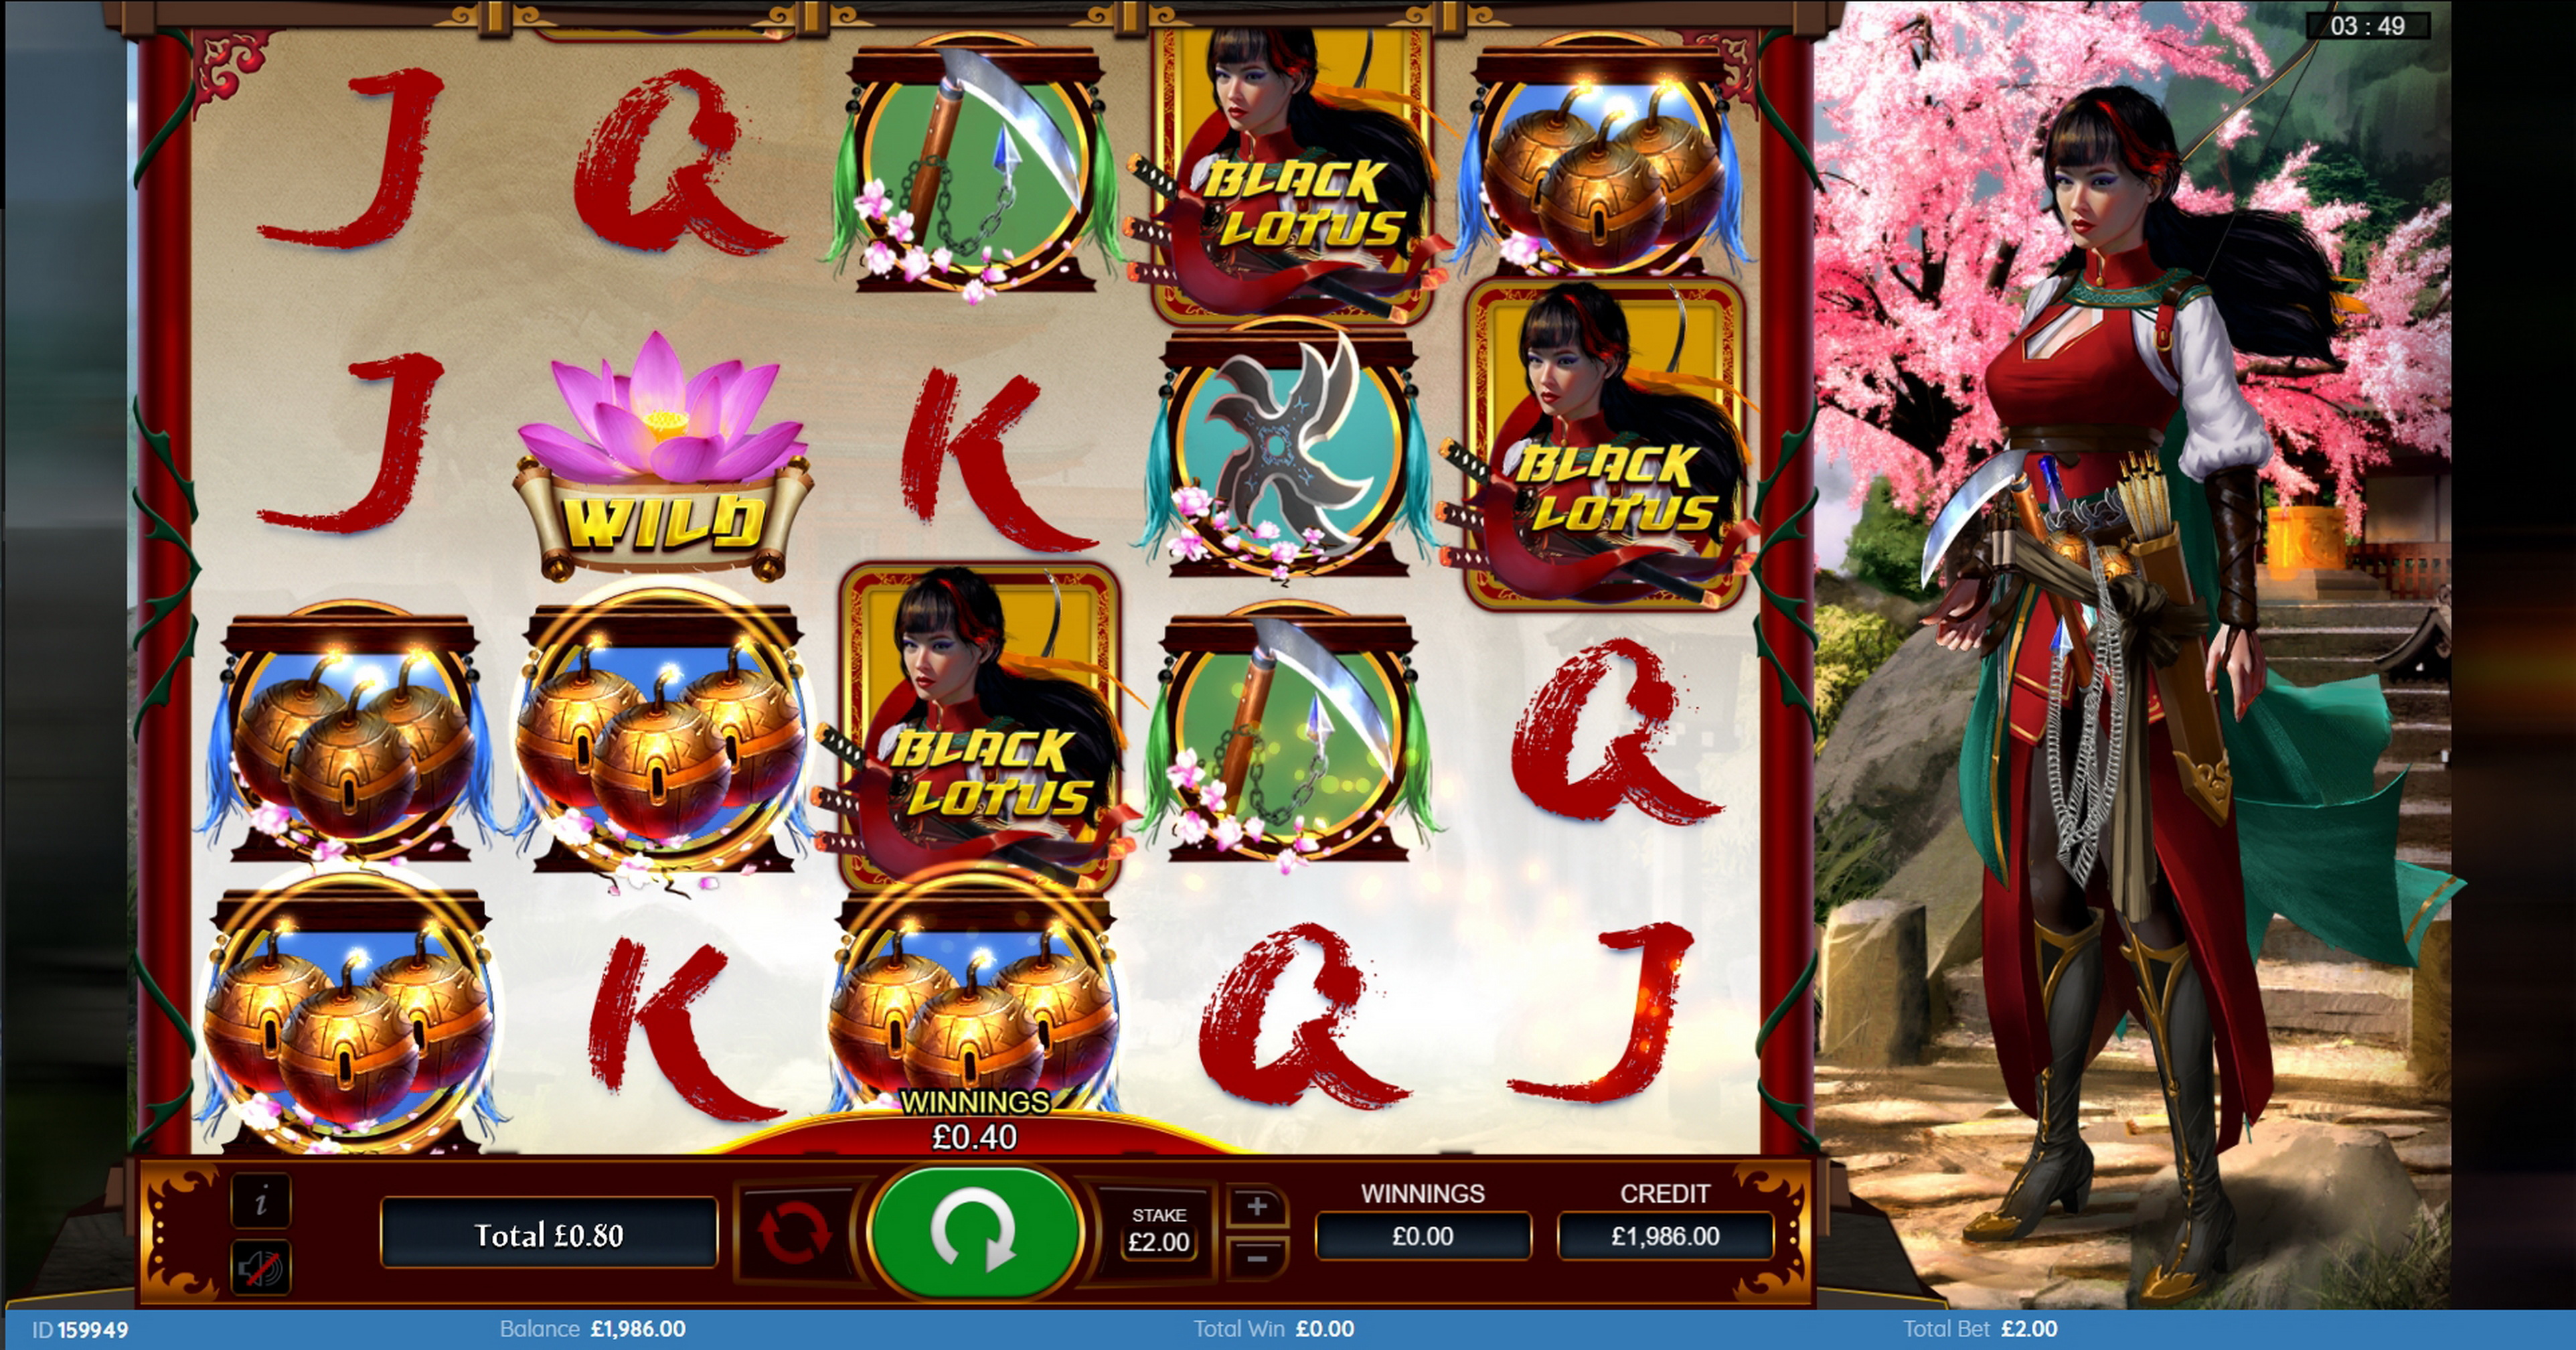 Win Money in Black Lotus Free Slot Game by Bulletproof Games